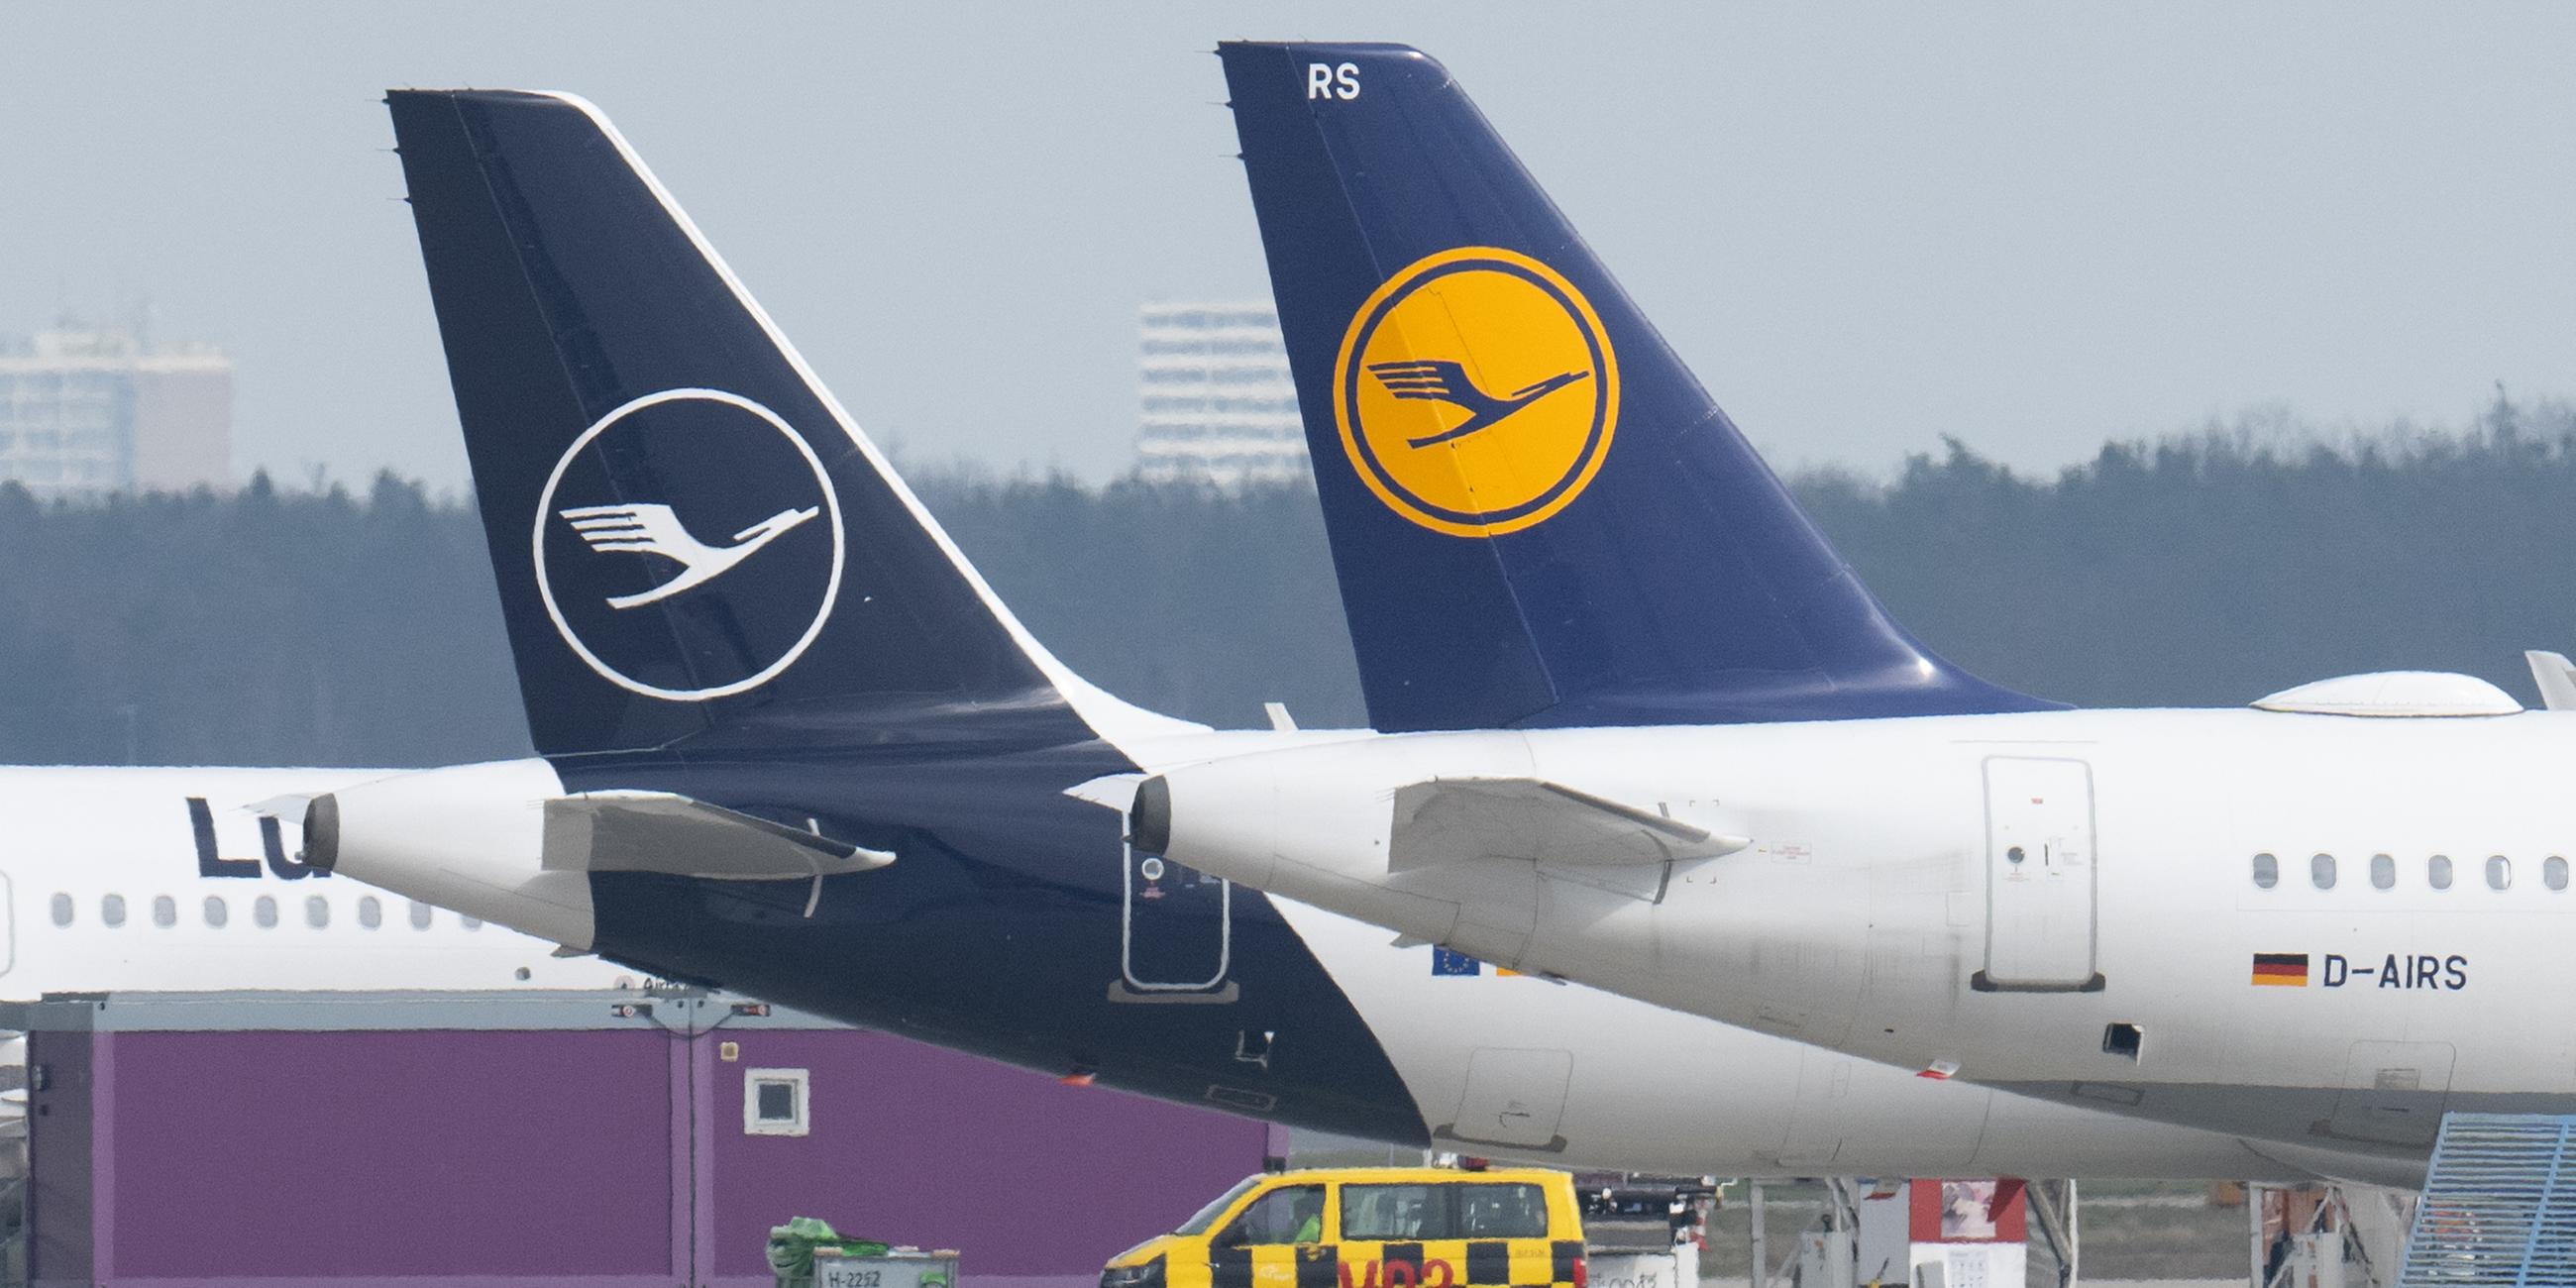 Flugzeuge der Fluggesellschaft Lufthansa stehen auf dem Rollfeld eines Flughafens.